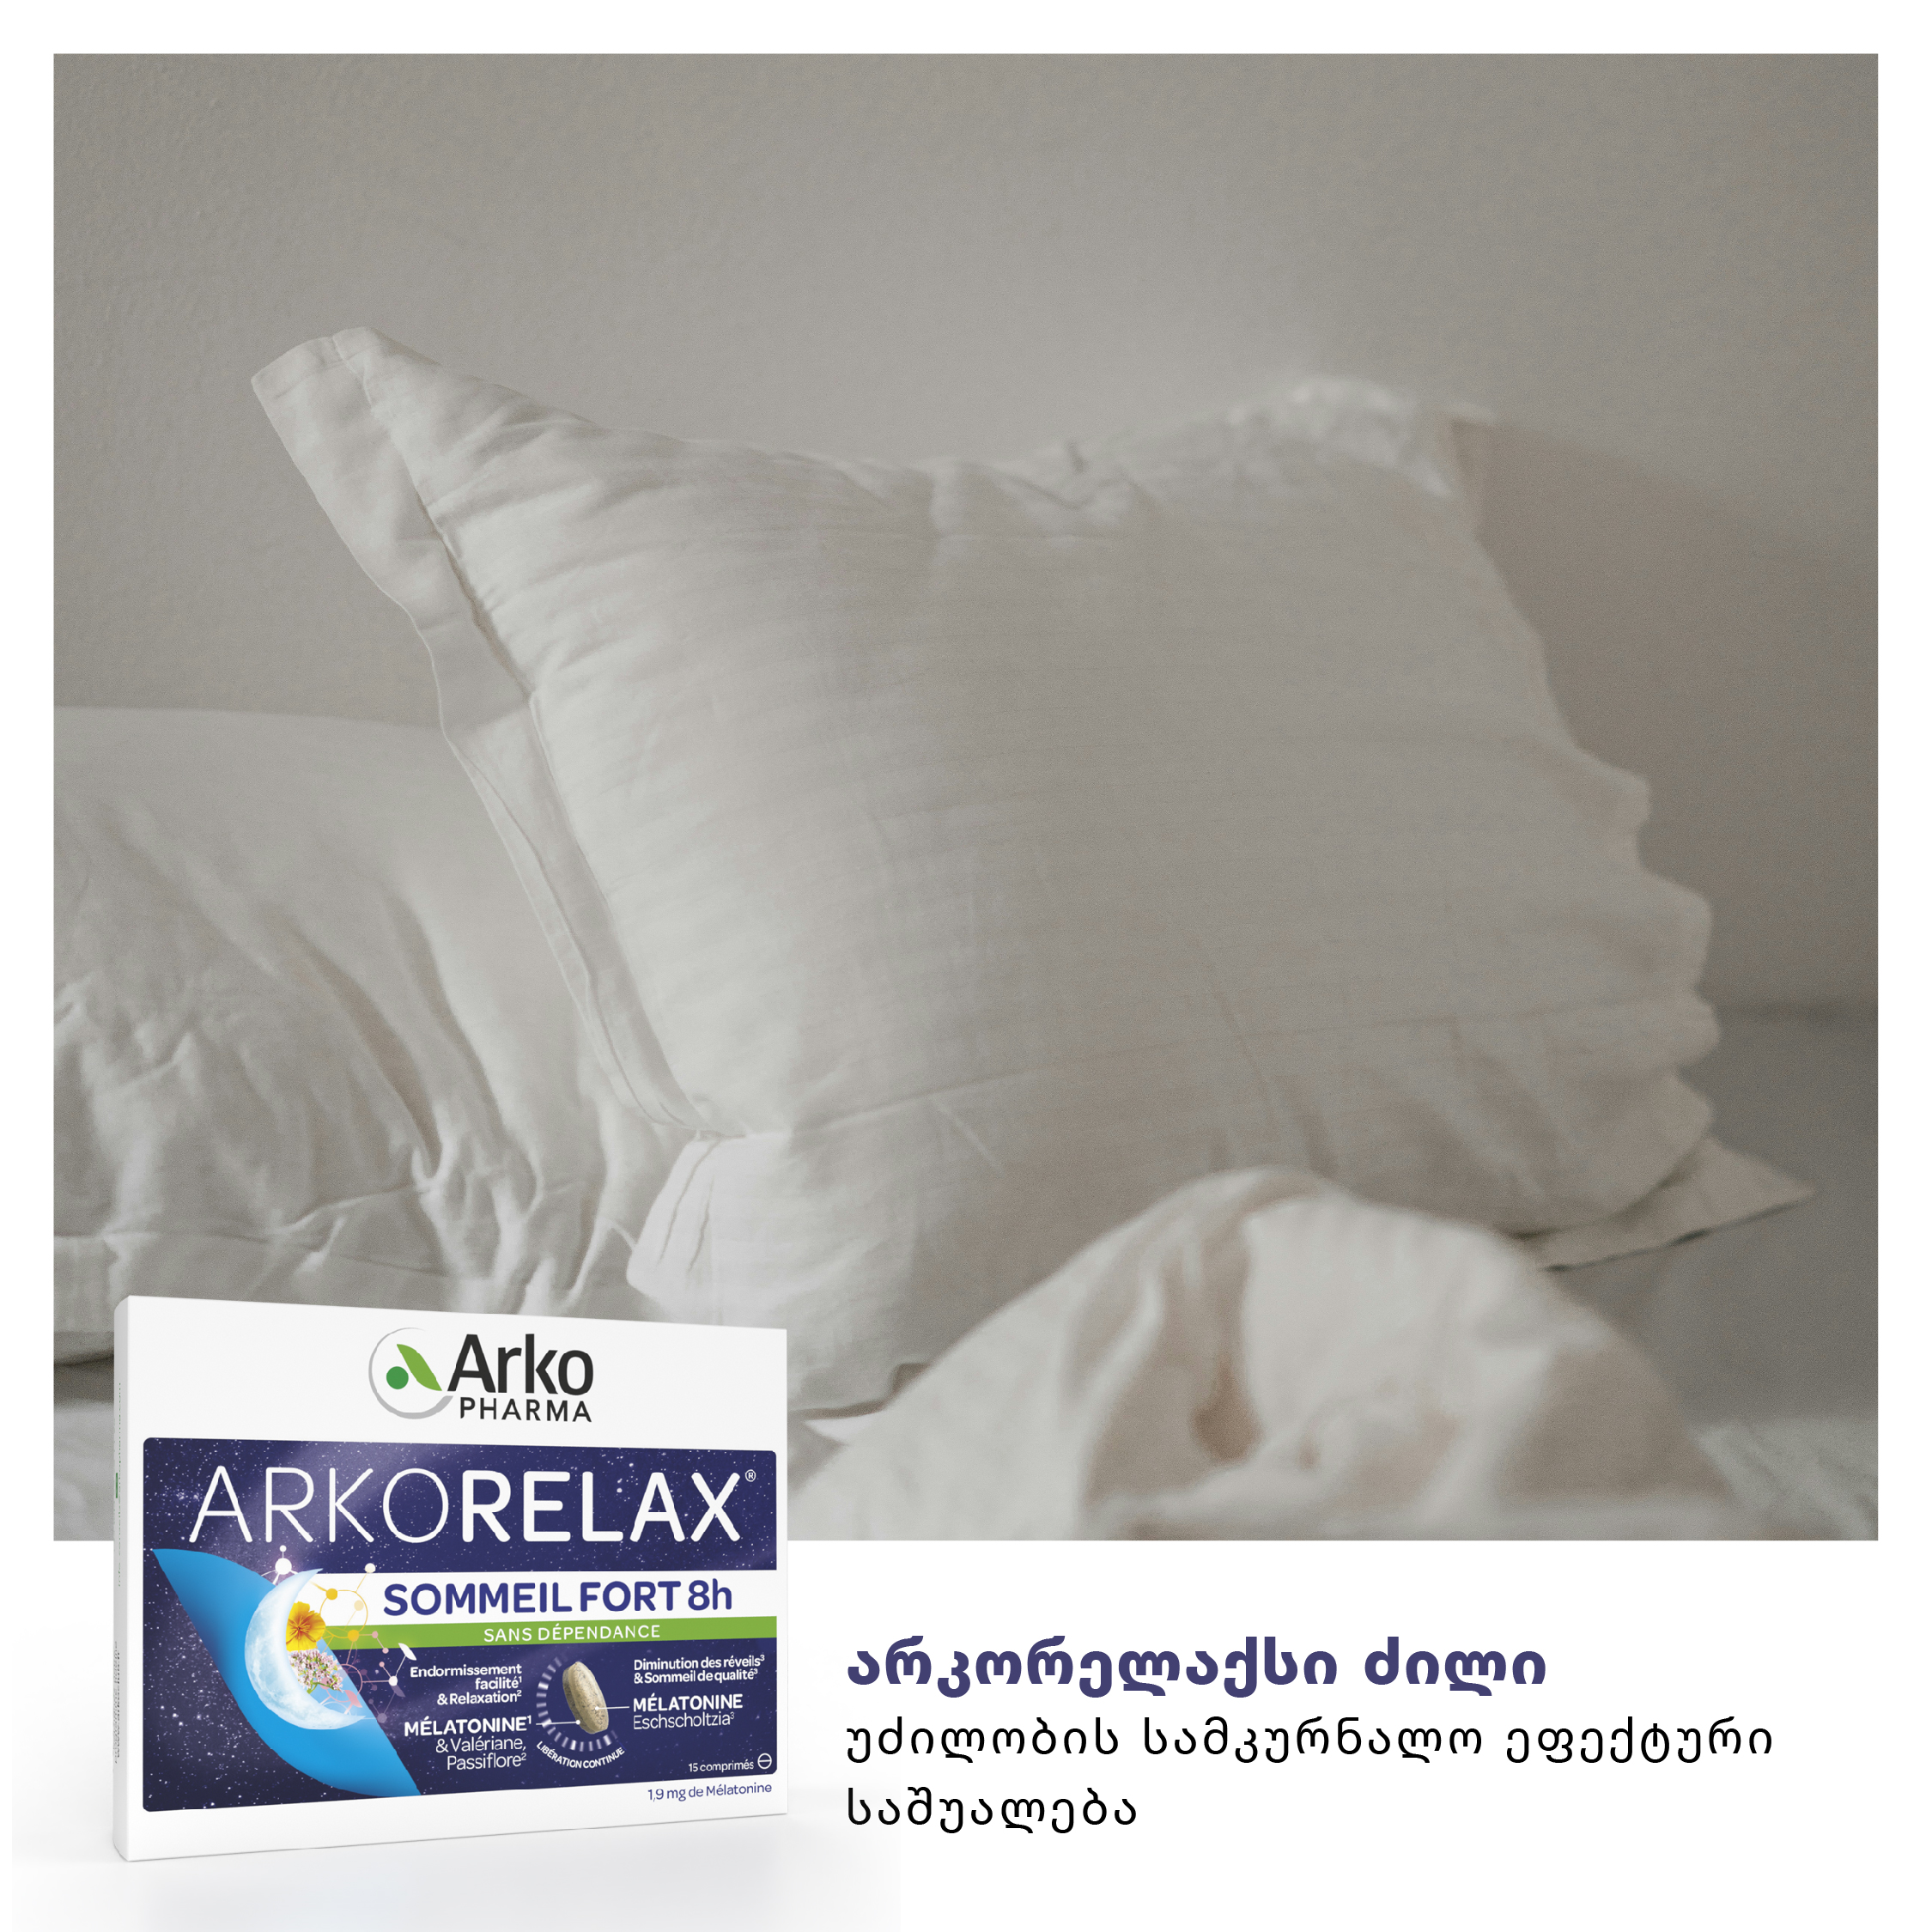 არკორელაქსი ძილი - უძილობის სამკურნალო ეფექტური საშუალება